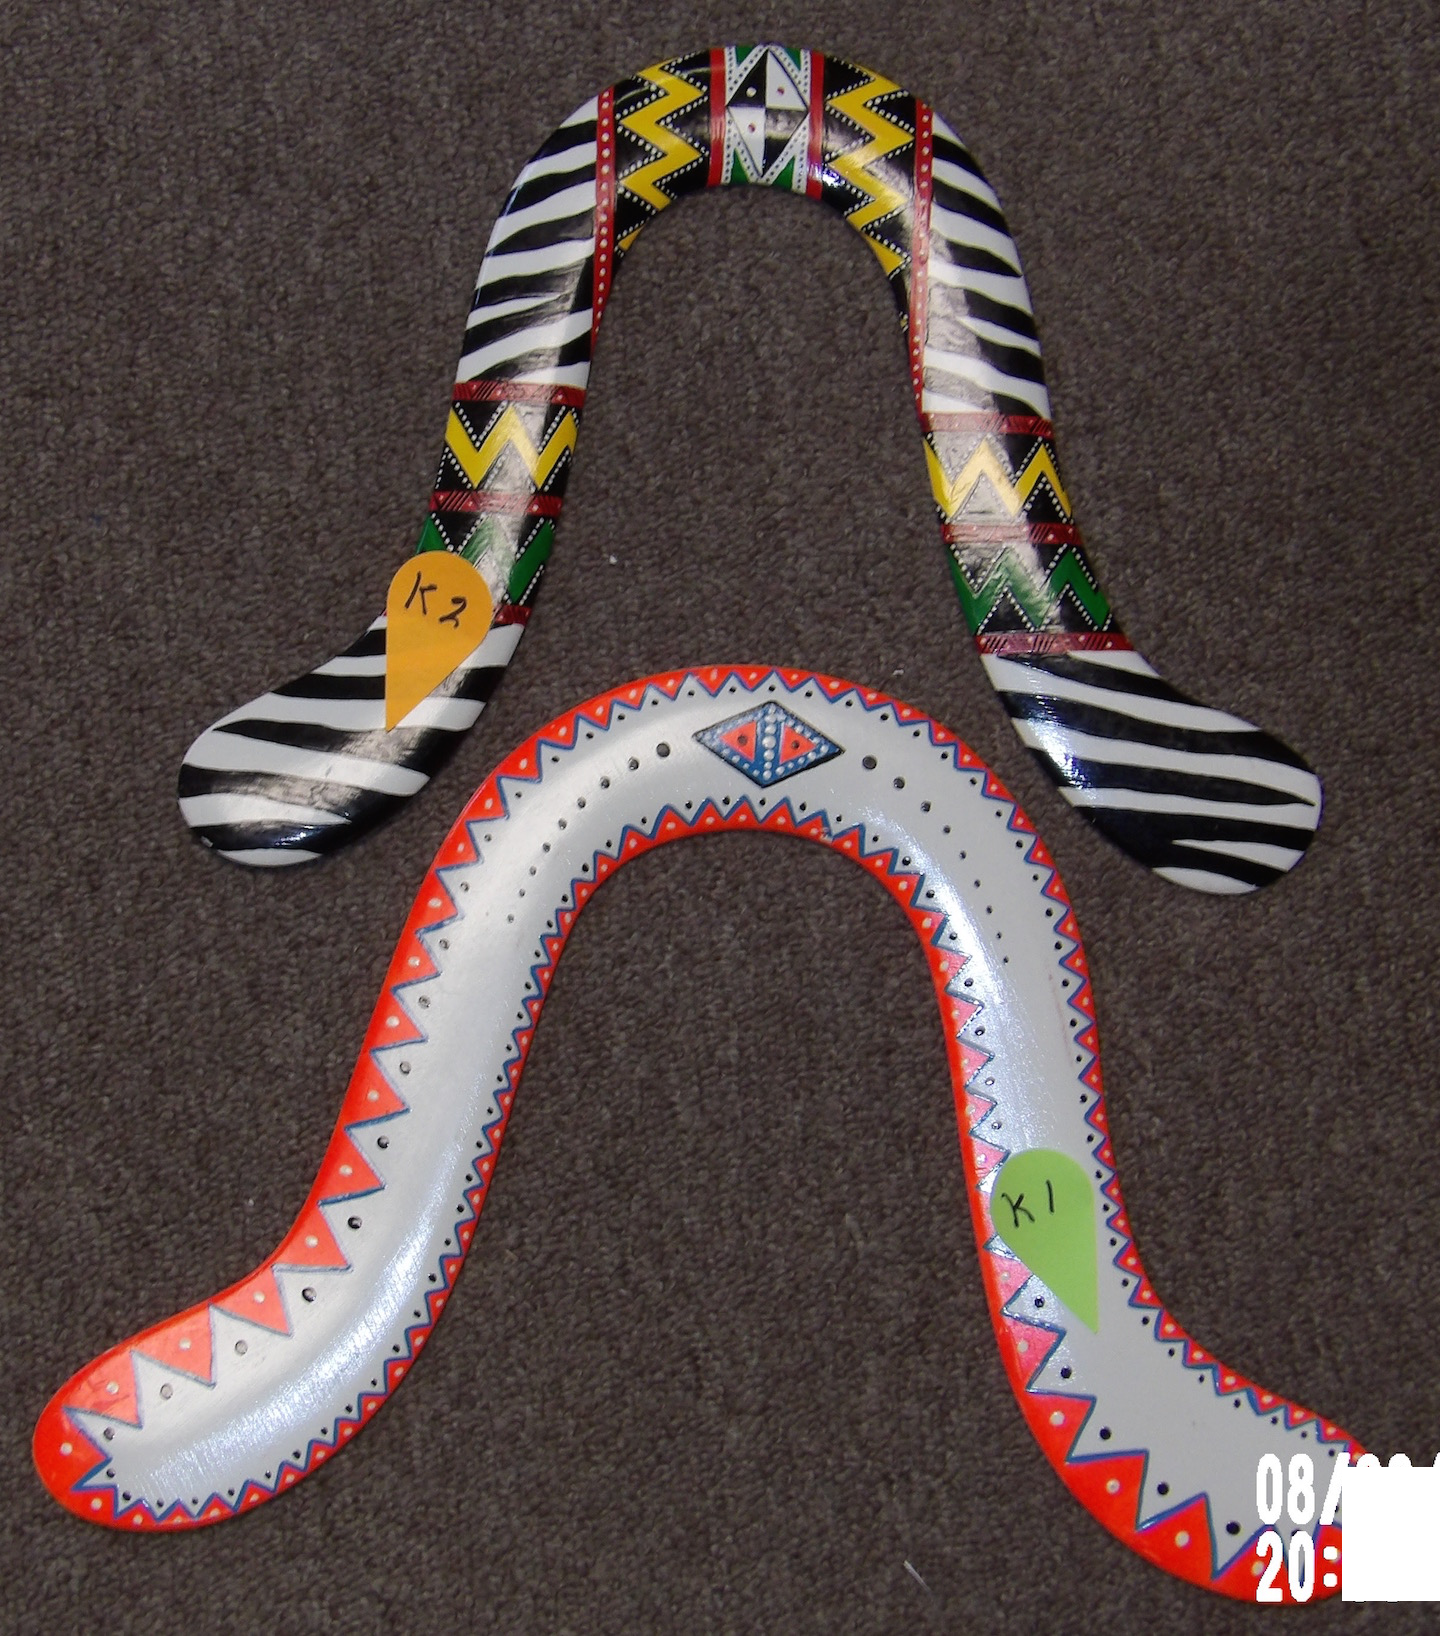 Kimo Zulu boomerangs